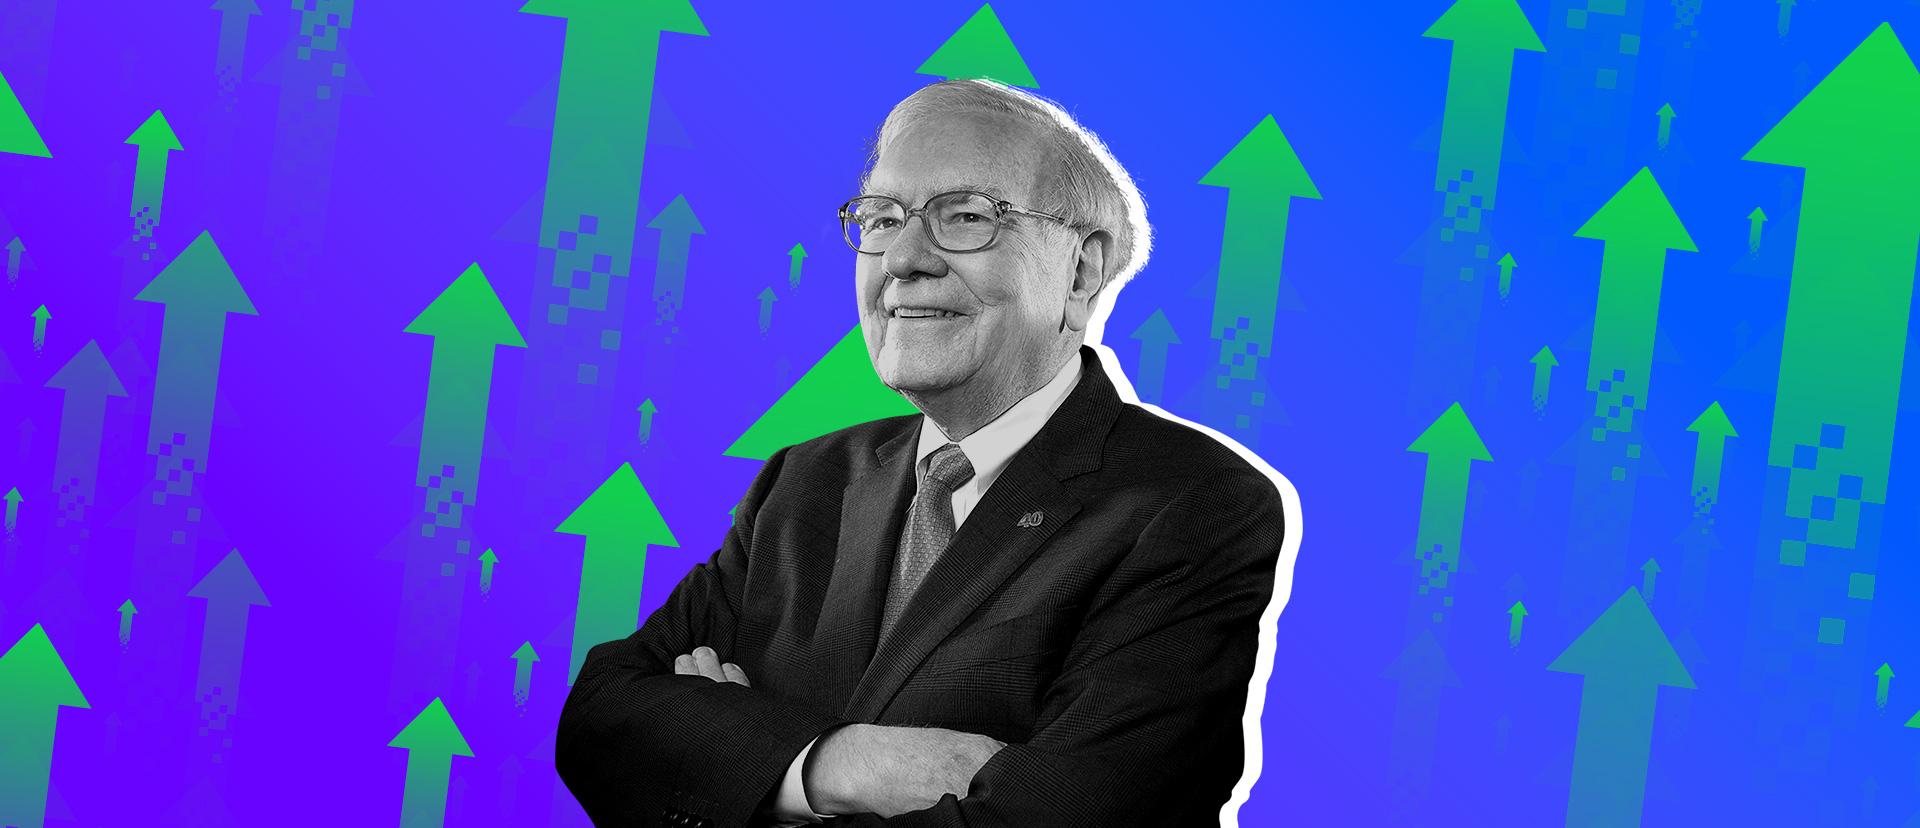 Syarikat yang Warren Buffet Pertimbangkan Perlu Diperhatikan